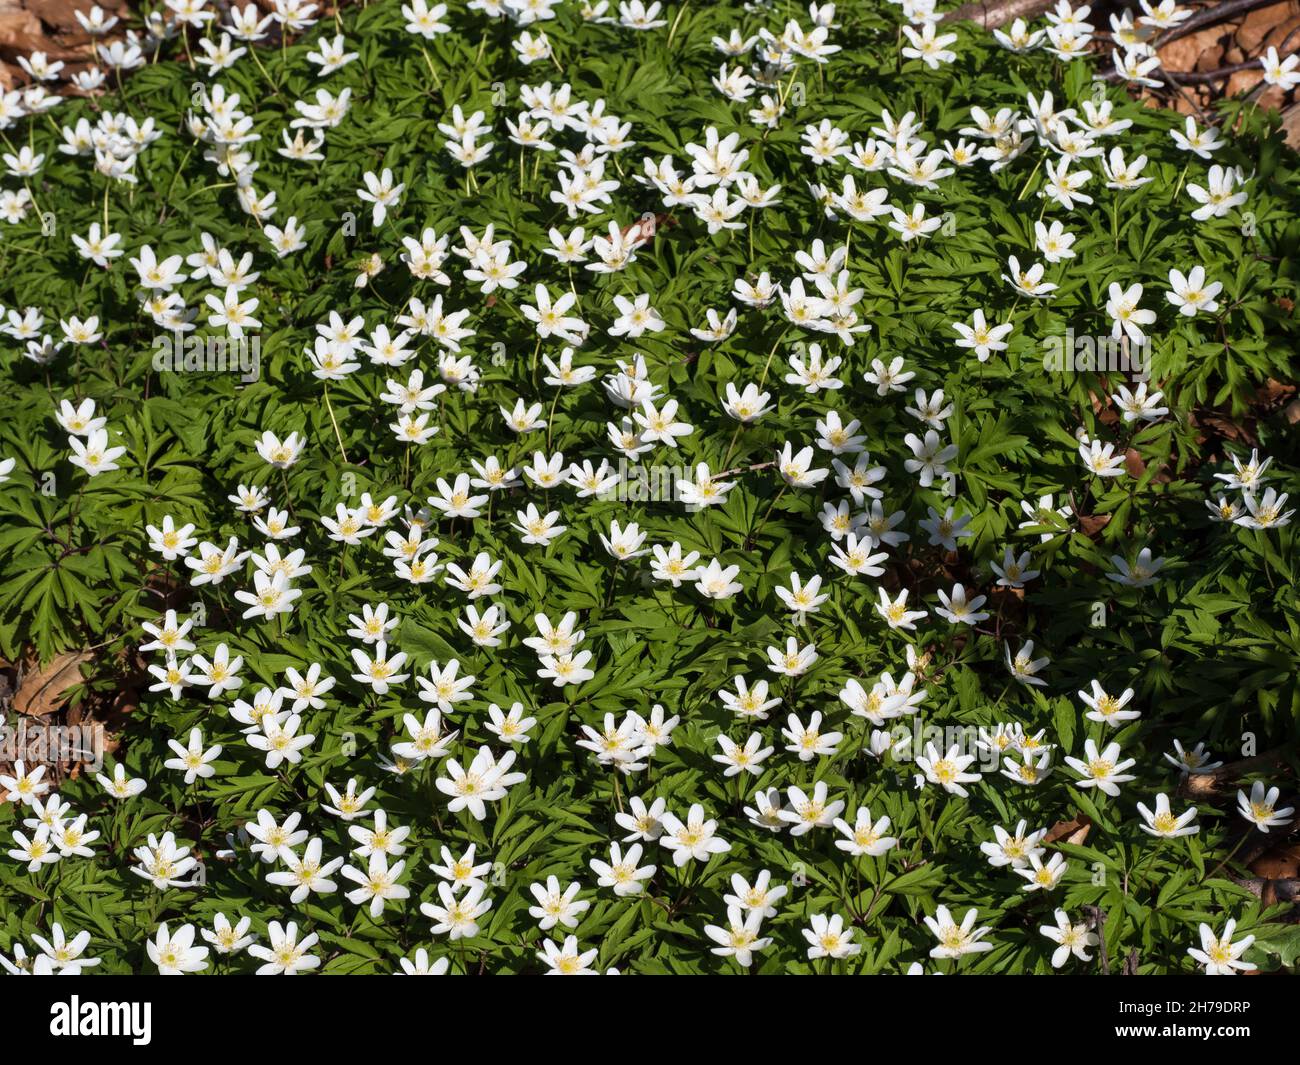 Carpet of spring flowers (Anemone nemorosa) Stock Photo